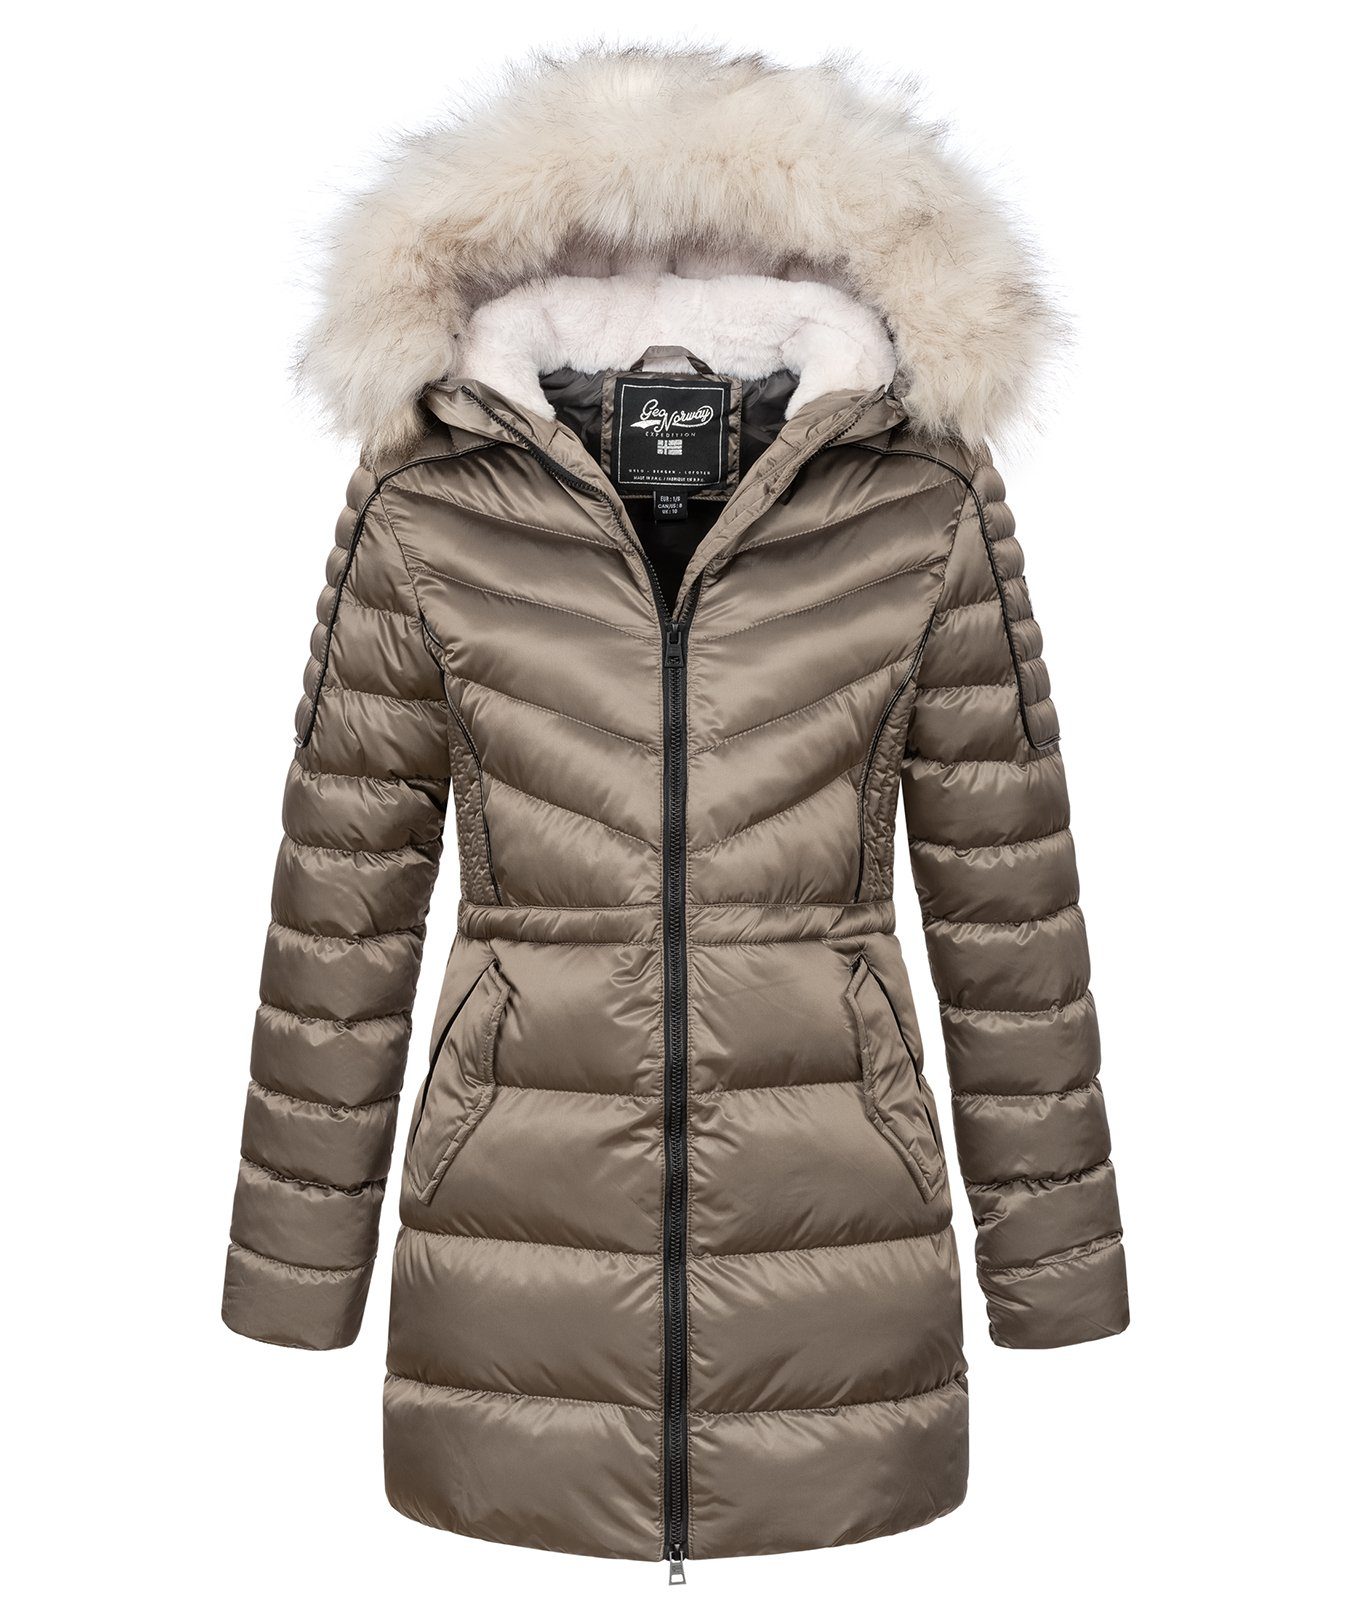 Beliebte Produkte sind Geo Norway Winterjacke Winter Mantel Damen Jacke Beige D-478